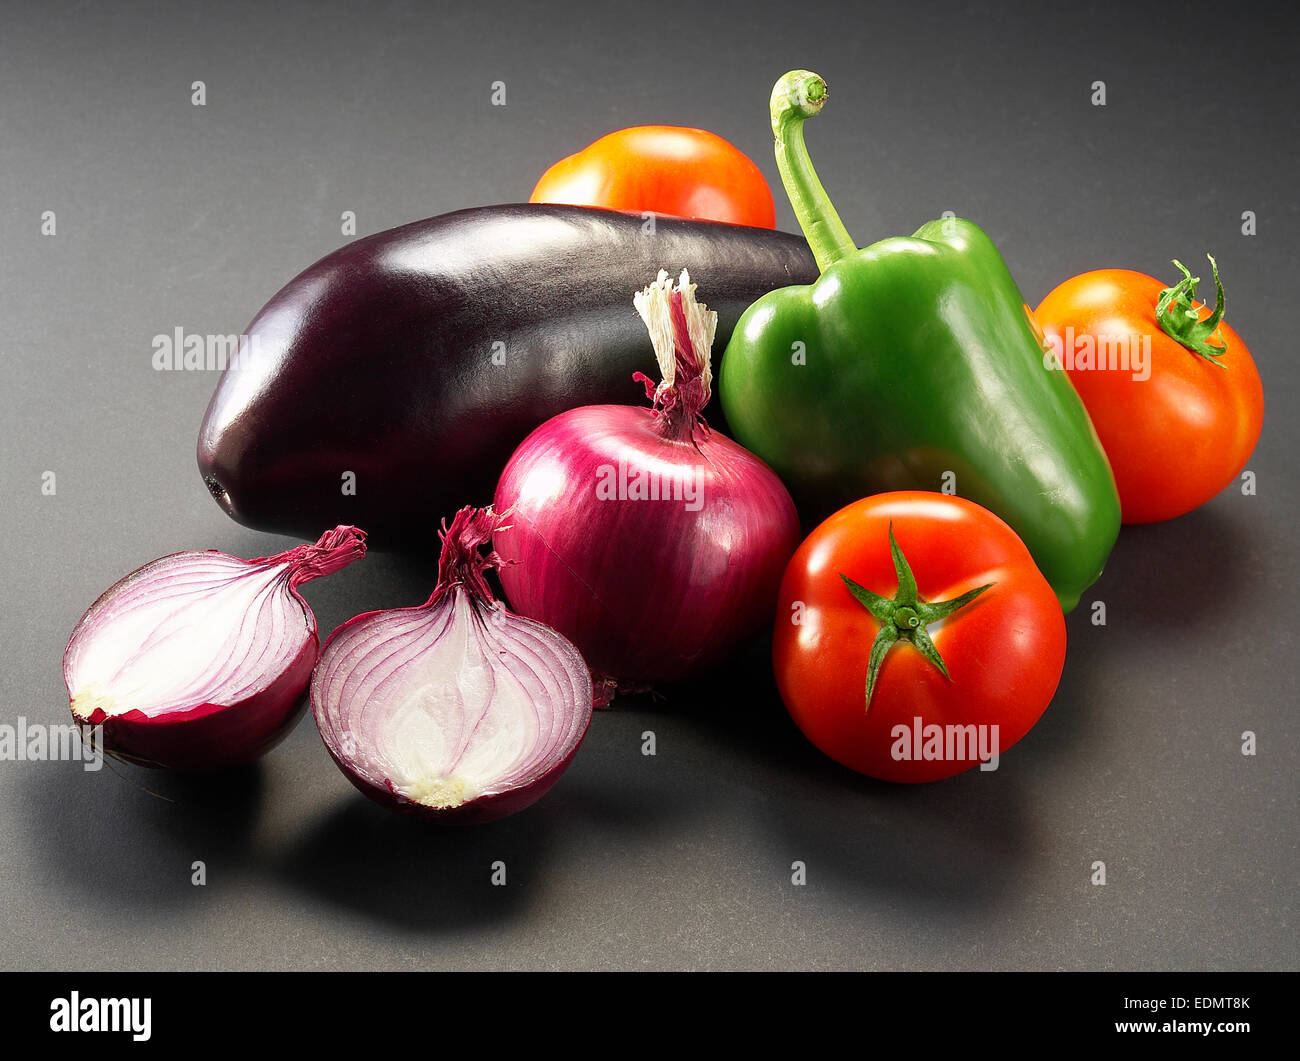 Still Life Fotografie von Gemüse; Paprika, Zwiebeln, Tomaten, Auberginen  Stockfotografie - Alamy